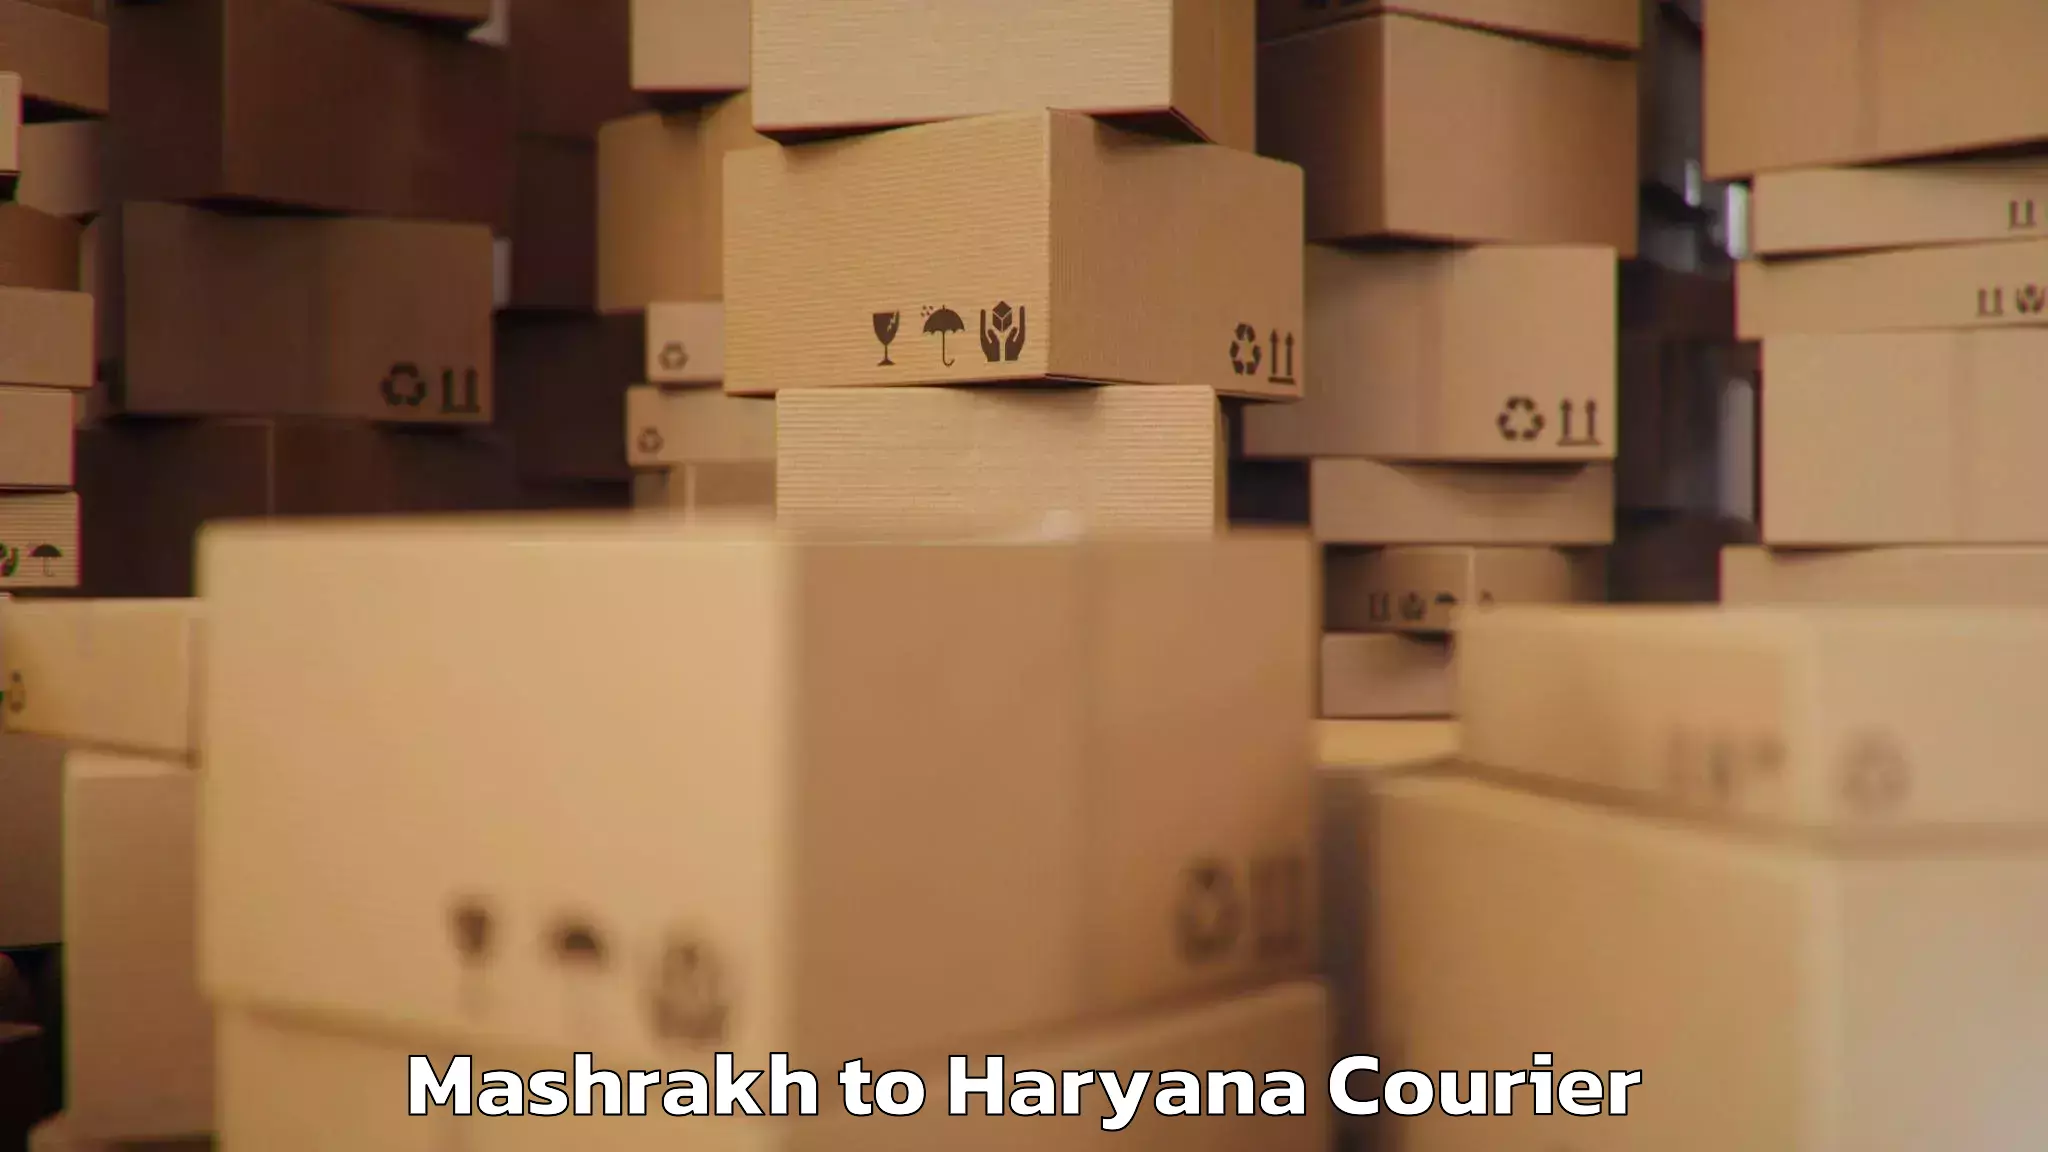 Global baggage shipping Mashrakh to IIIT Sonepat